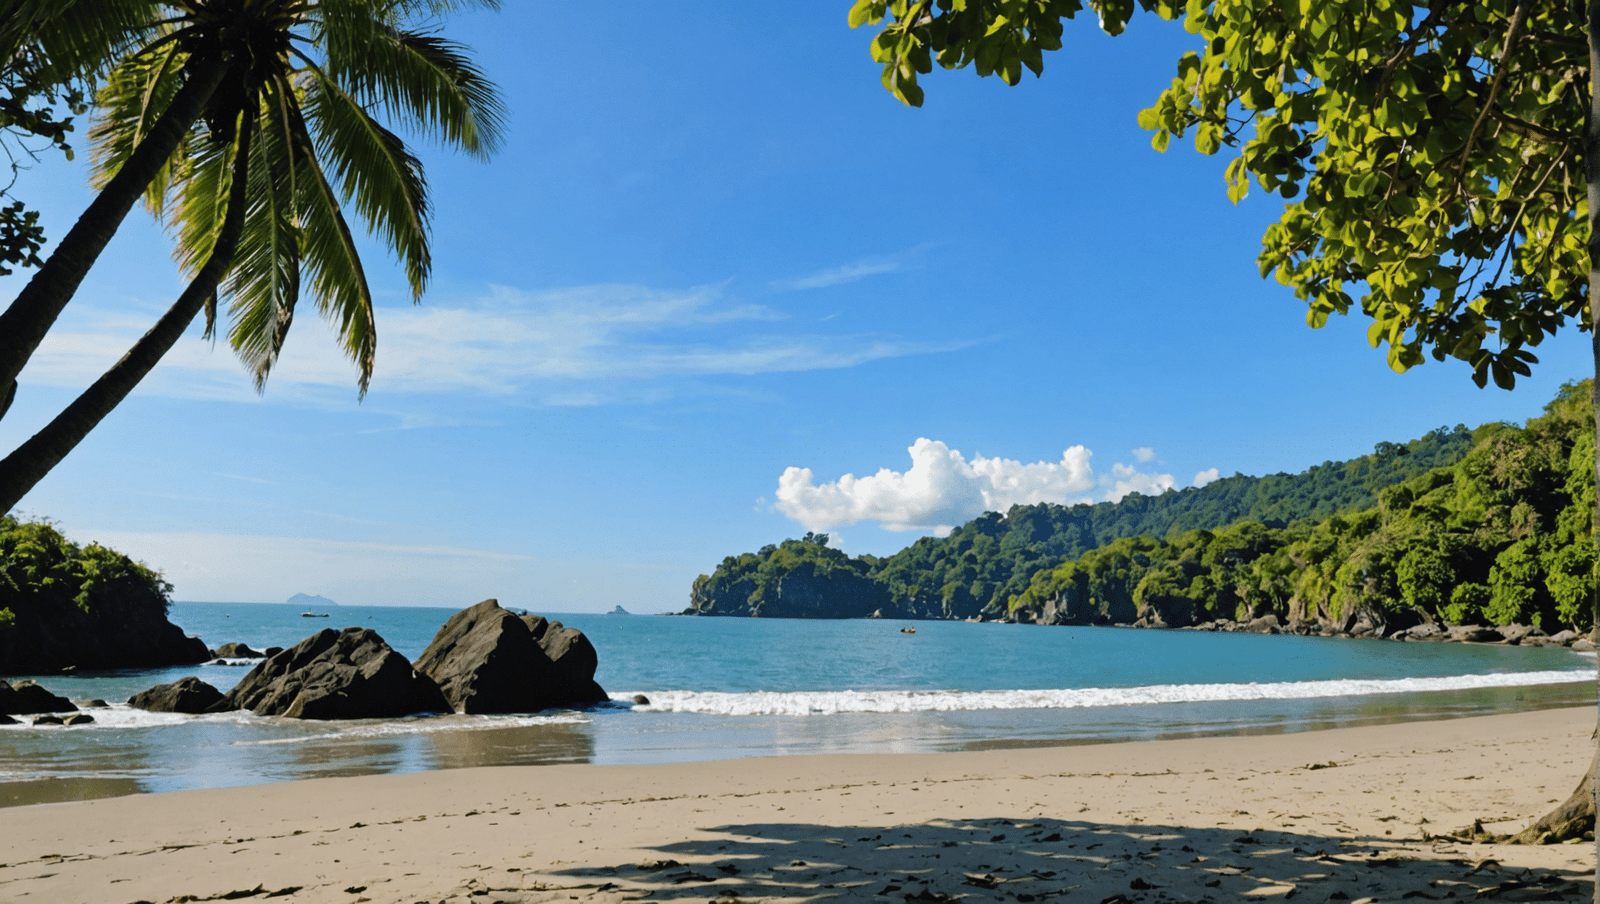 découvrez le guide de voyage de manuel antonio pour des conseils de voyage, des attractions populaires et des recommandations d'activités pour un séjour inoubliable au costa rica.